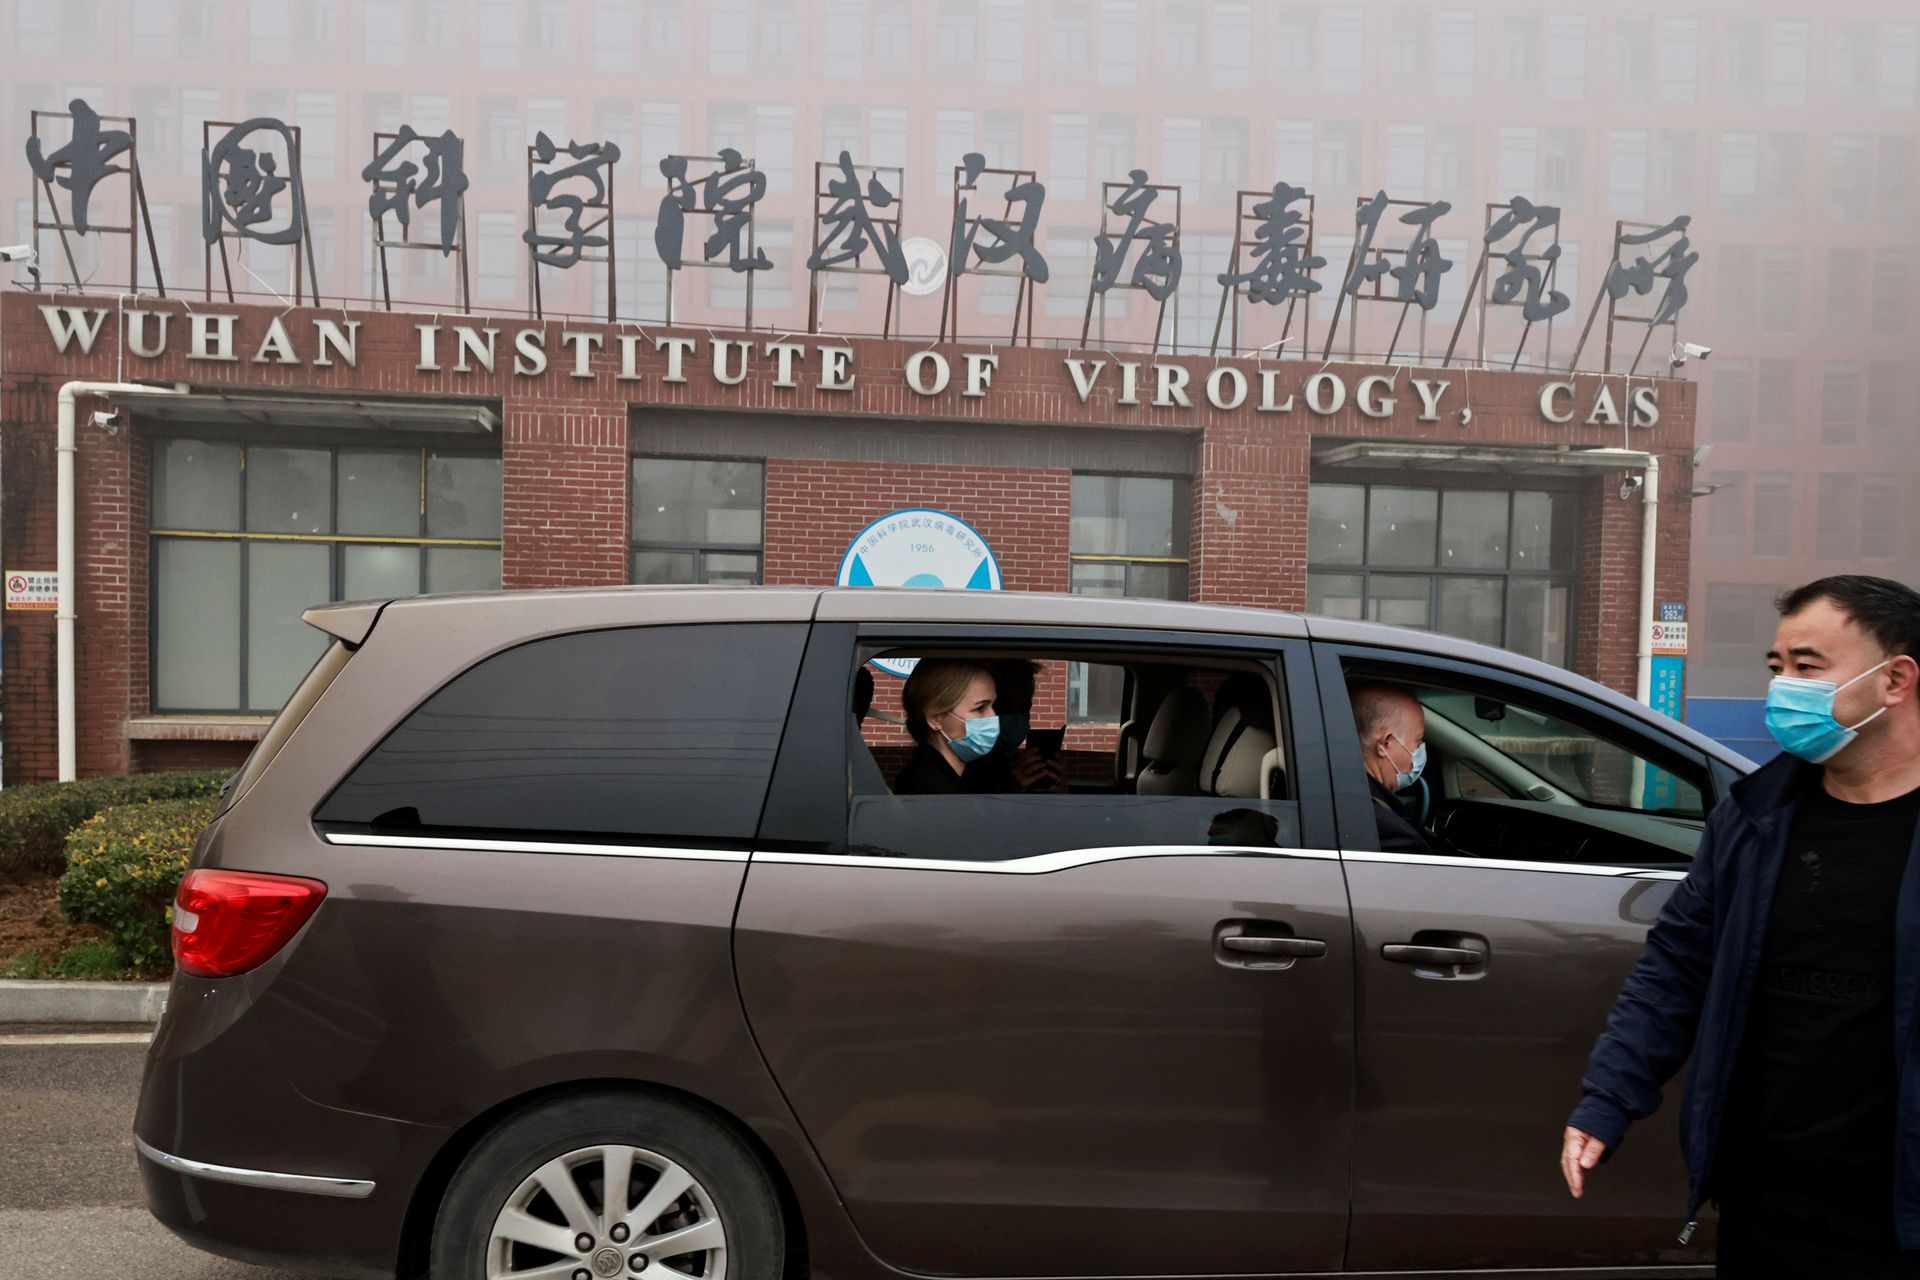 華裔科學家夫婦郵寄病毒至武漢被查 加國會介入